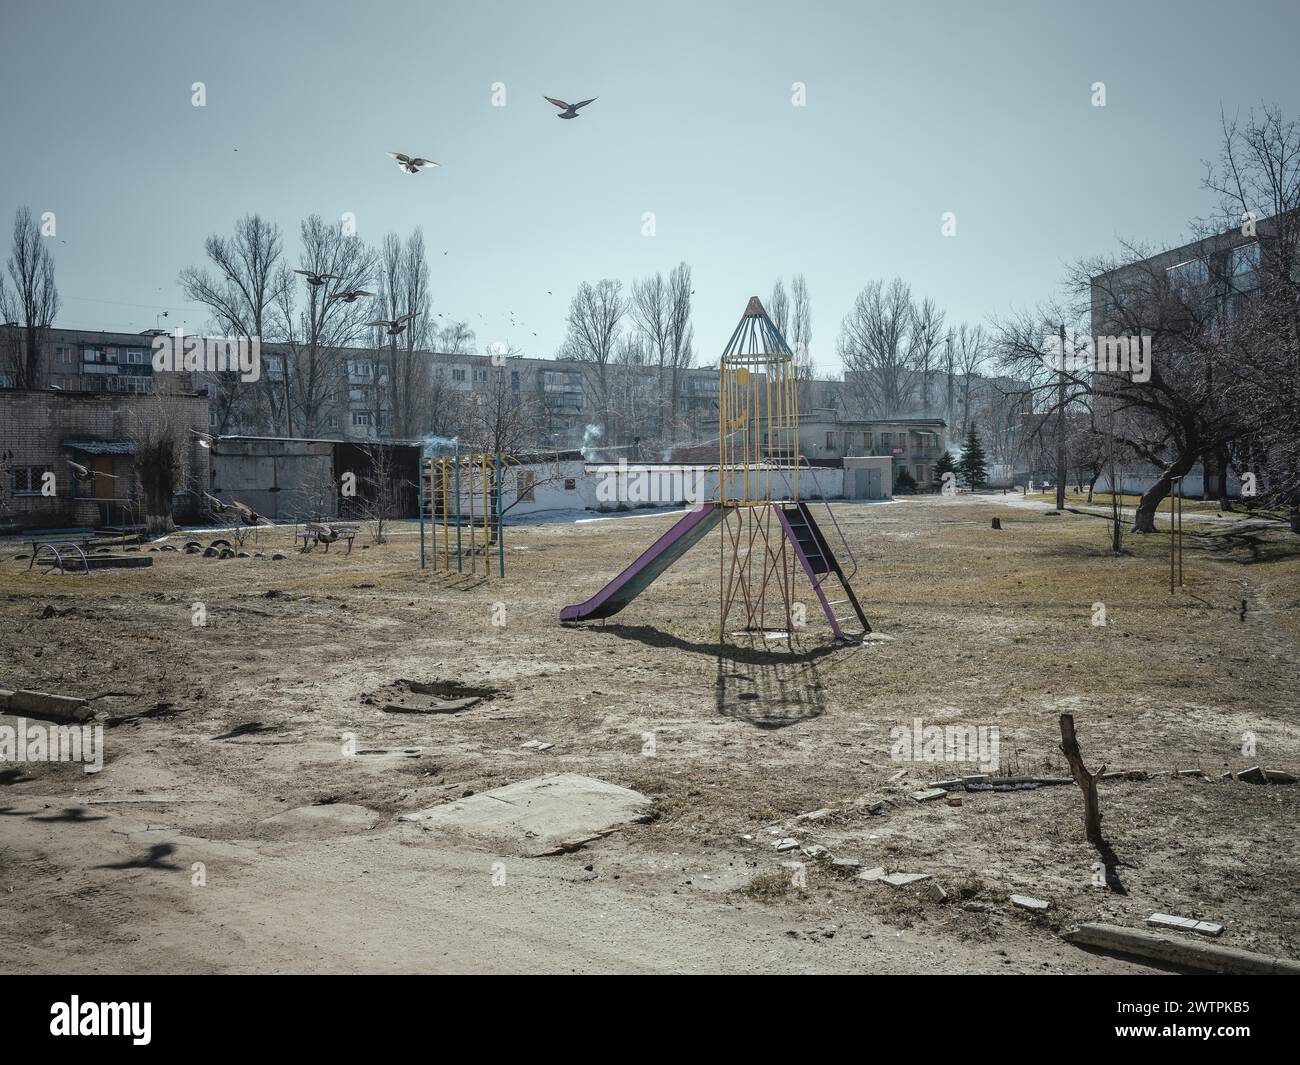 Aire de jeux dans un quartier résidentiel près du front, Kupyansk, oblast de Kharkiv, Ukraine, Europe Banque D'Images